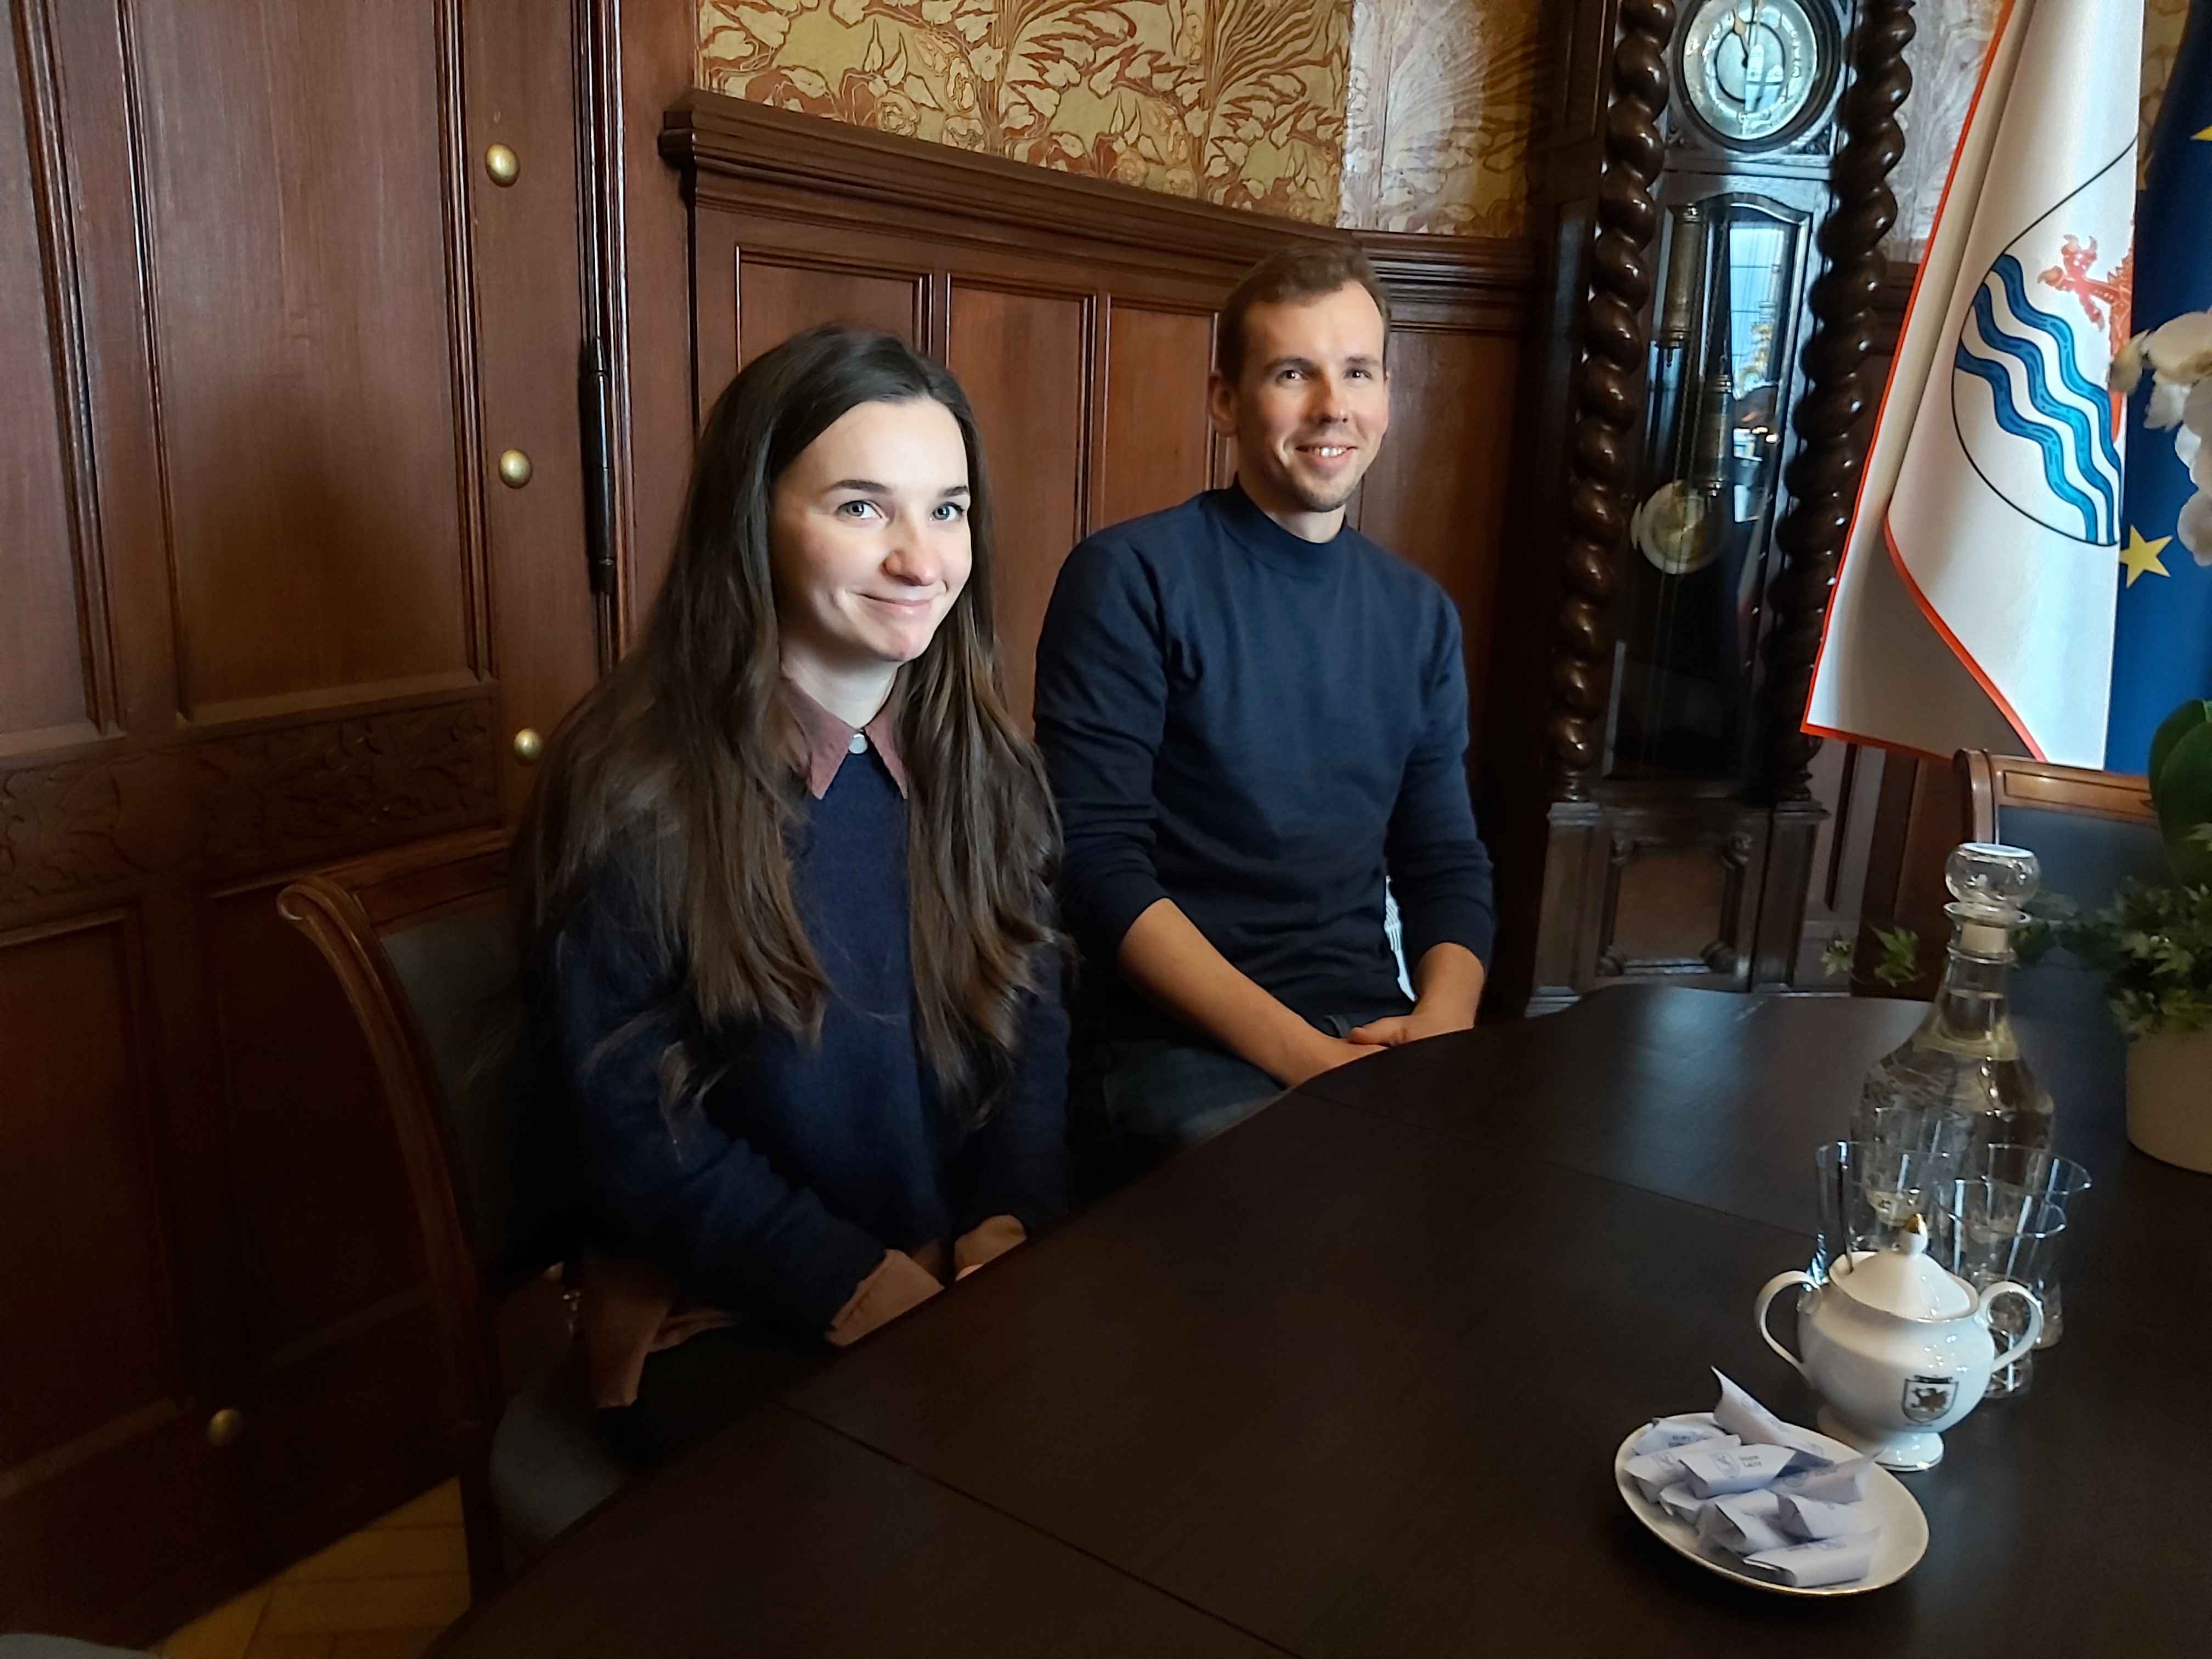 Mistrzowie -Pani Magda i Pan Kamil uśmiechają się, siedząc przy stole, w tle flaga Miasta Słupska oraz zegar